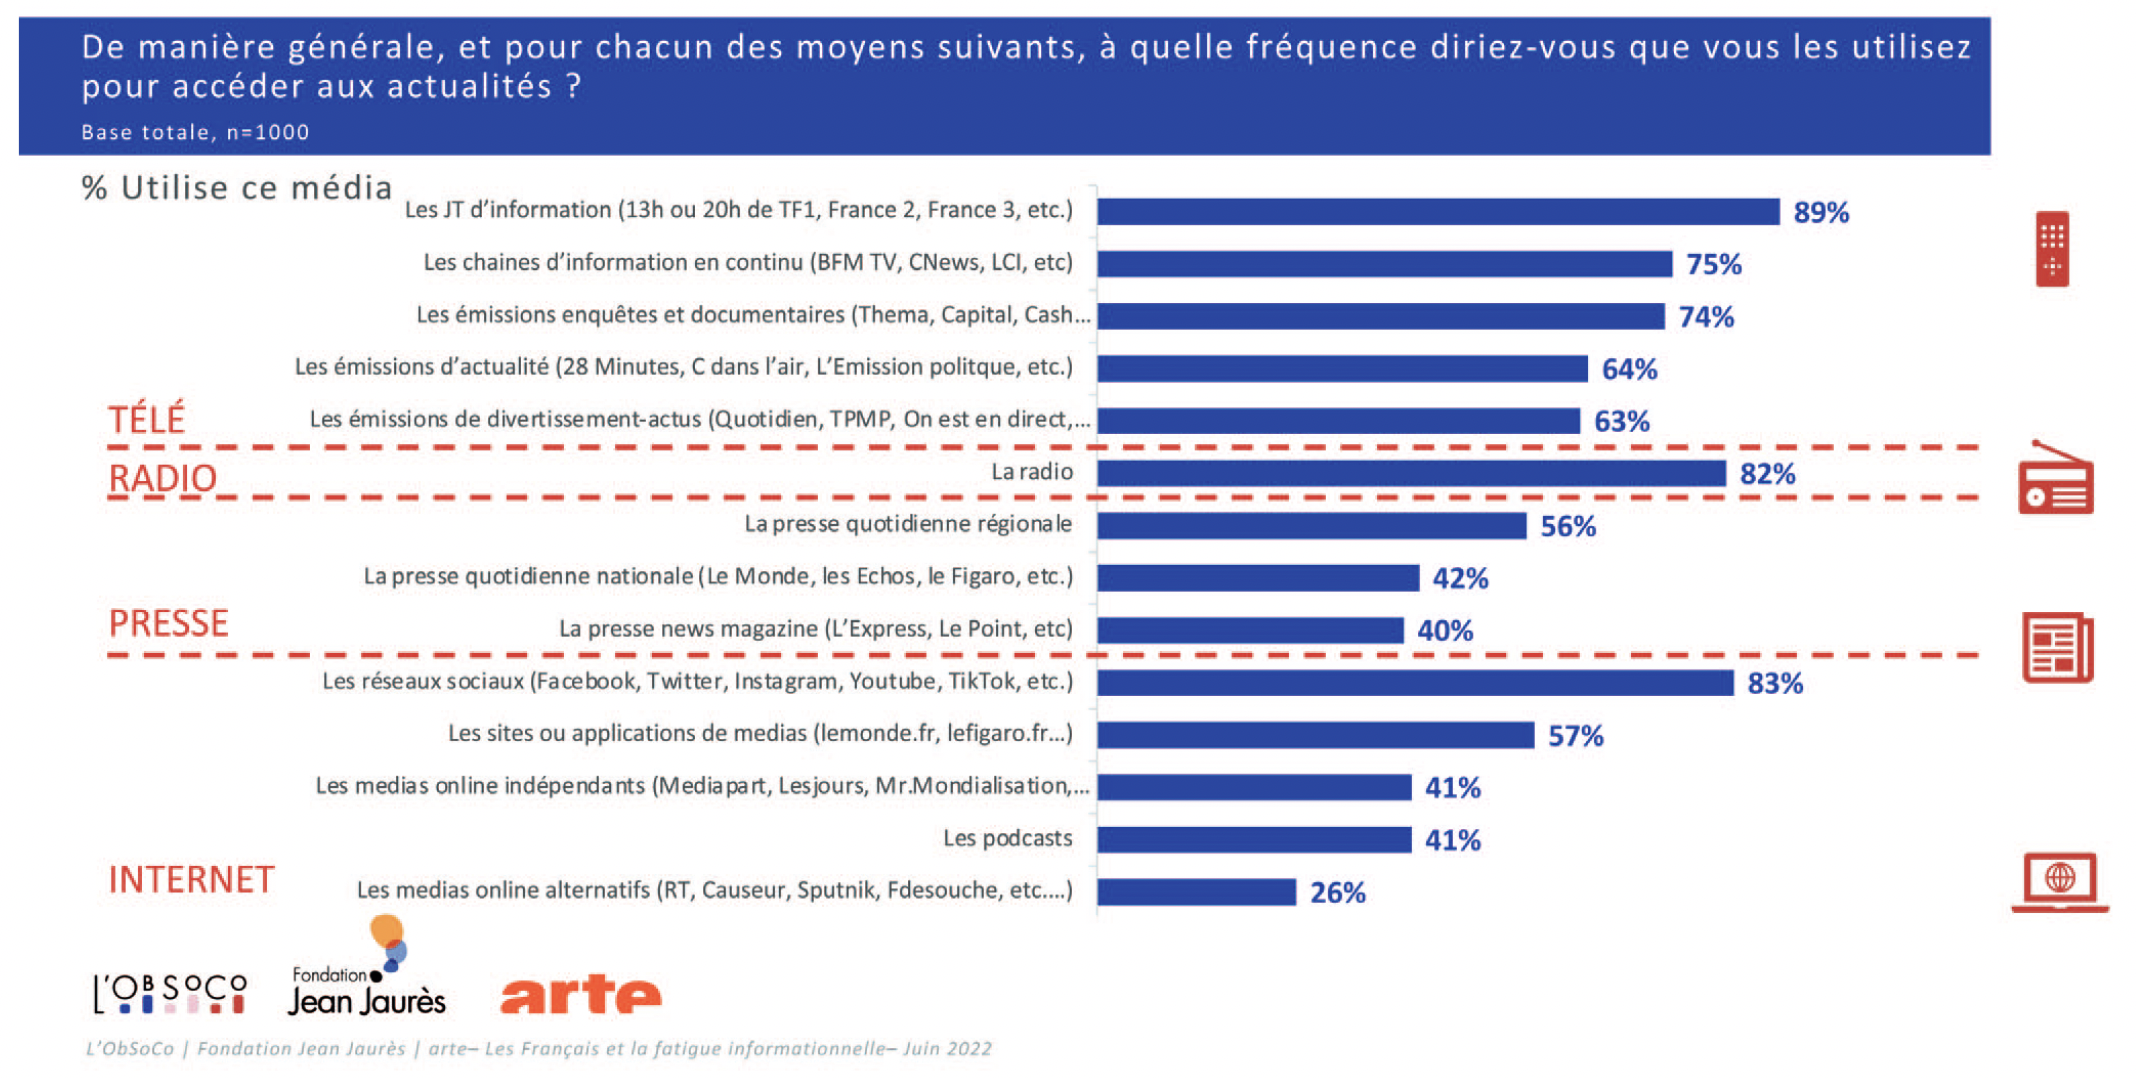 Pour s’informer, les Français utilisent en moyenne 8.3 canaux différents et 3.2 quotidiennement. Trois canaux dominent : le JT de 13 heures ou 20 heures (89% s’informent en général par son intermédiaire), les réseaux sociaux (83%) et la radio (82%).